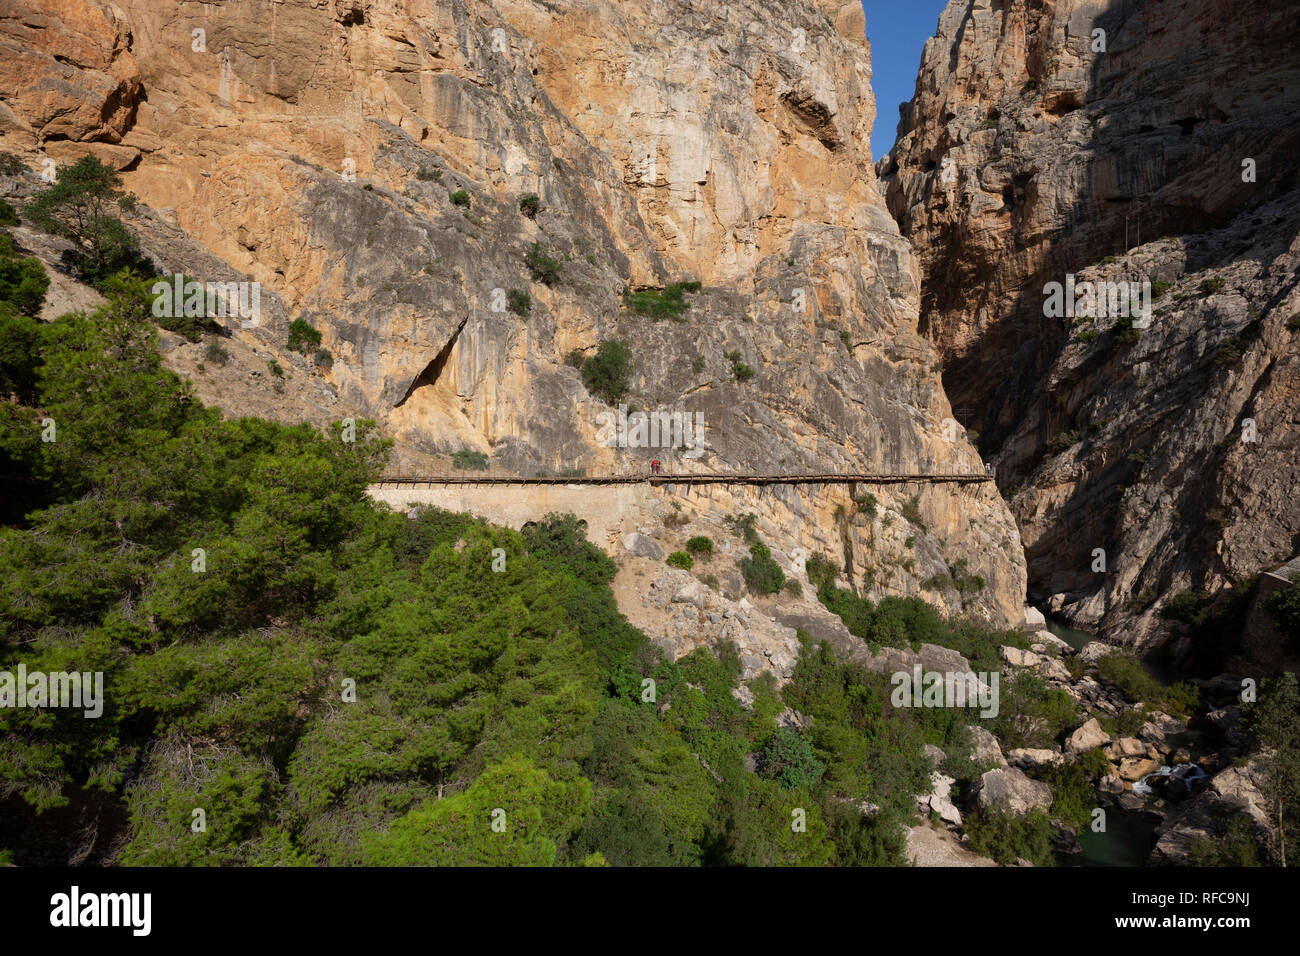 Foothpath di 'El Caminito del Rey' (King's Little Path), una delle più pericolose al mondo con molti turisti, Spagna Foto Stock